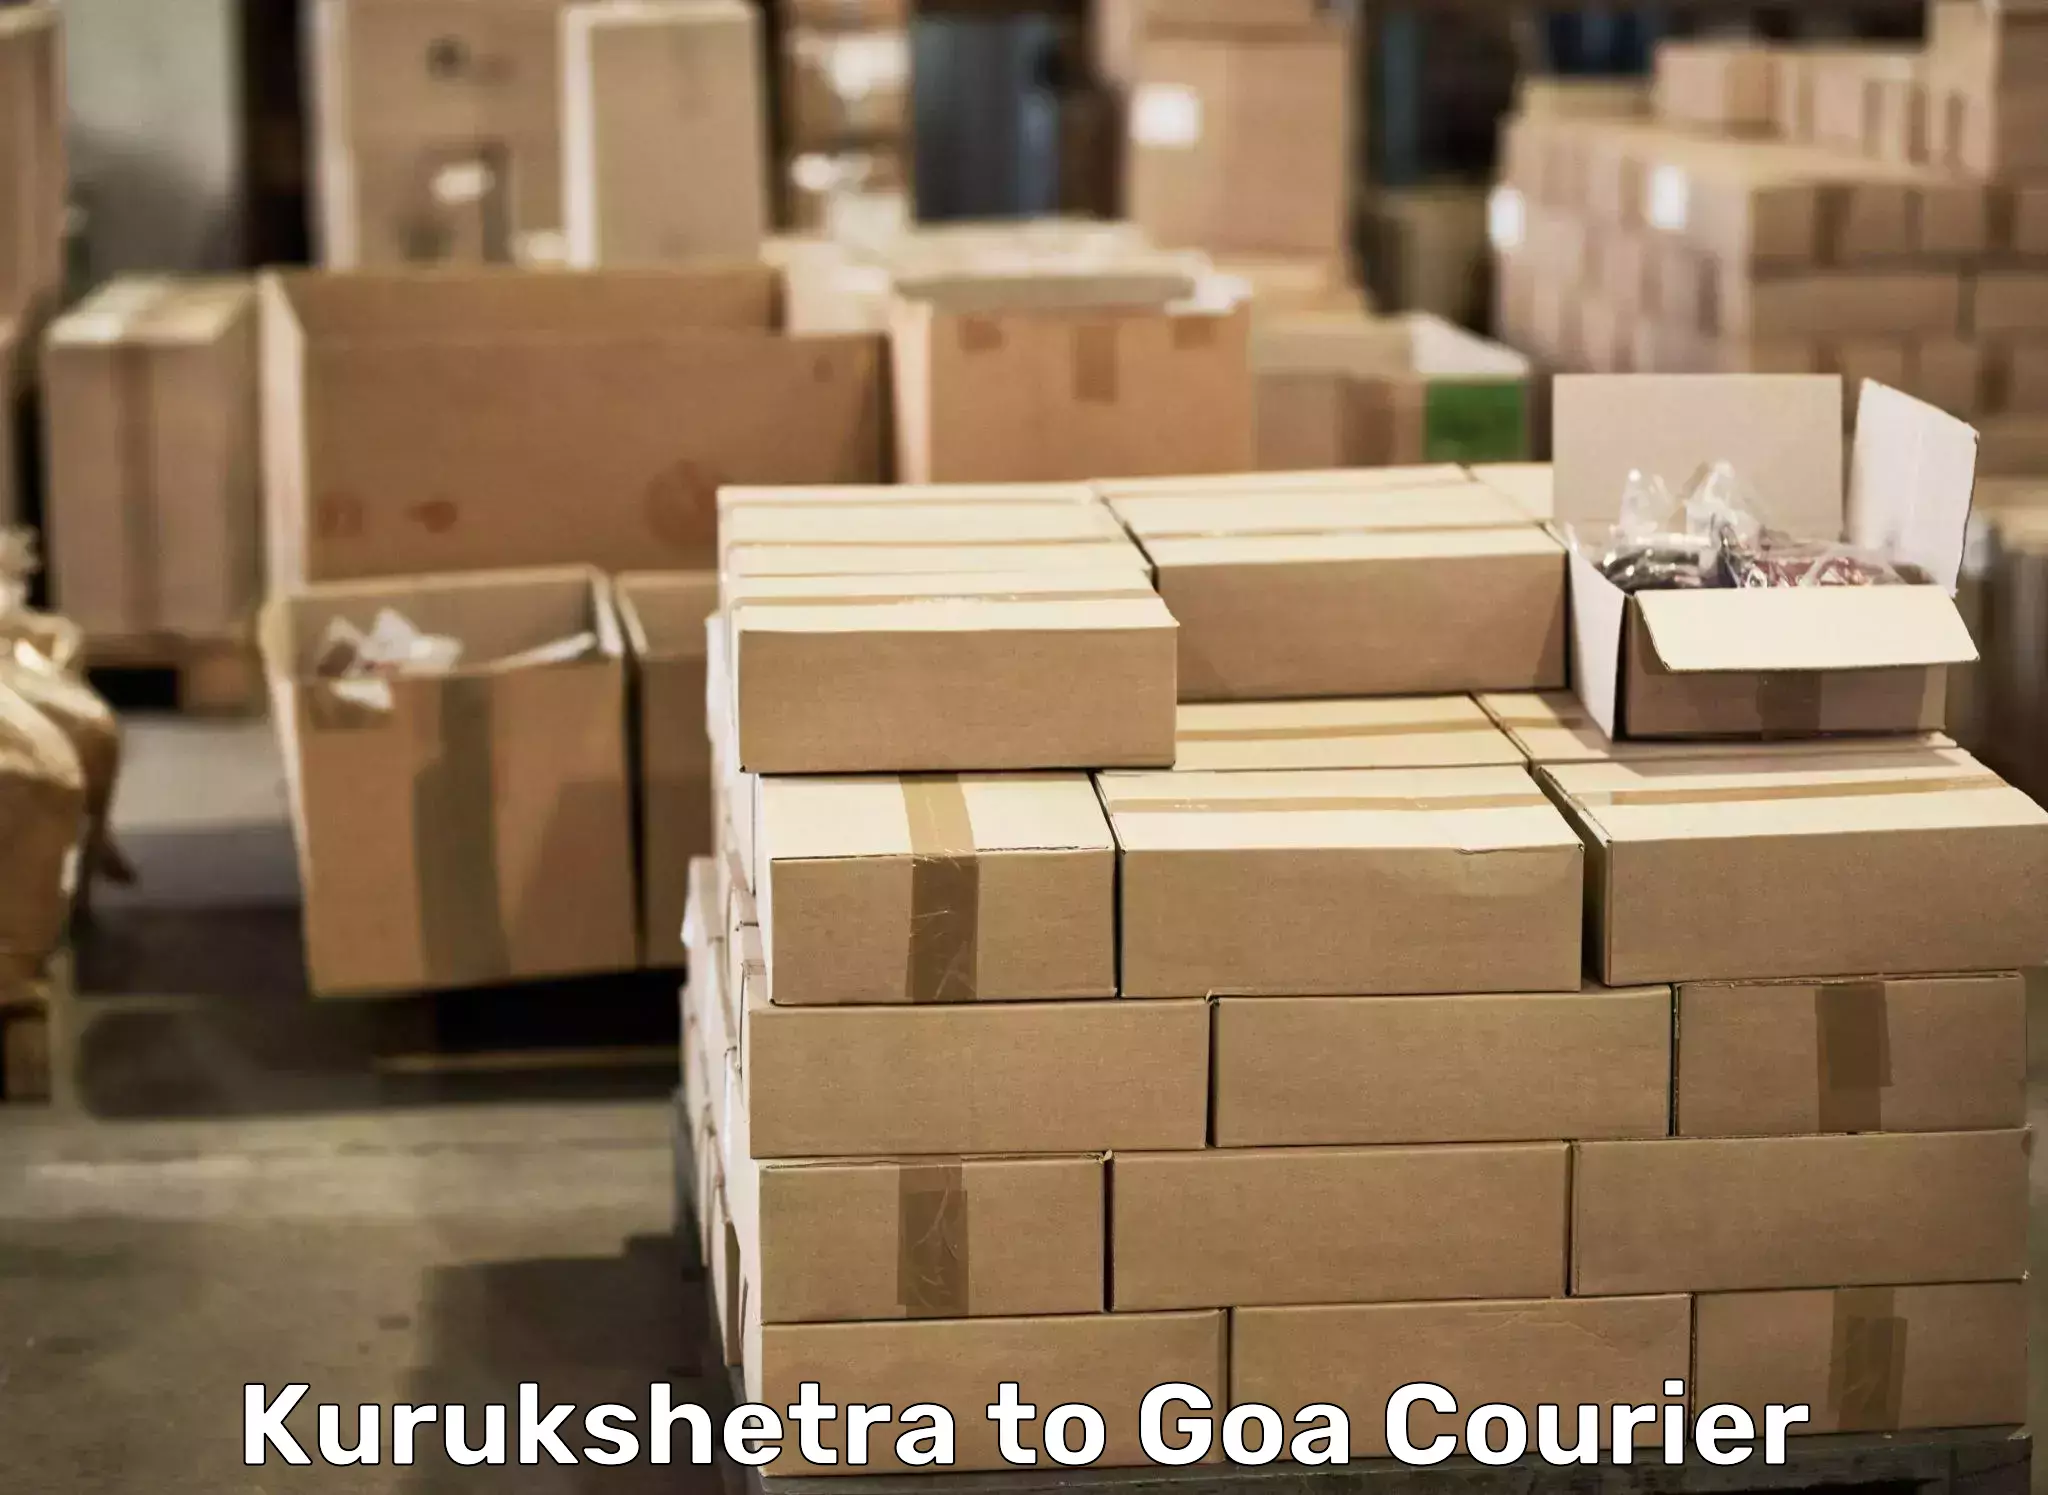 Door-to-door relocation services Kurukshetra to IIT Goa